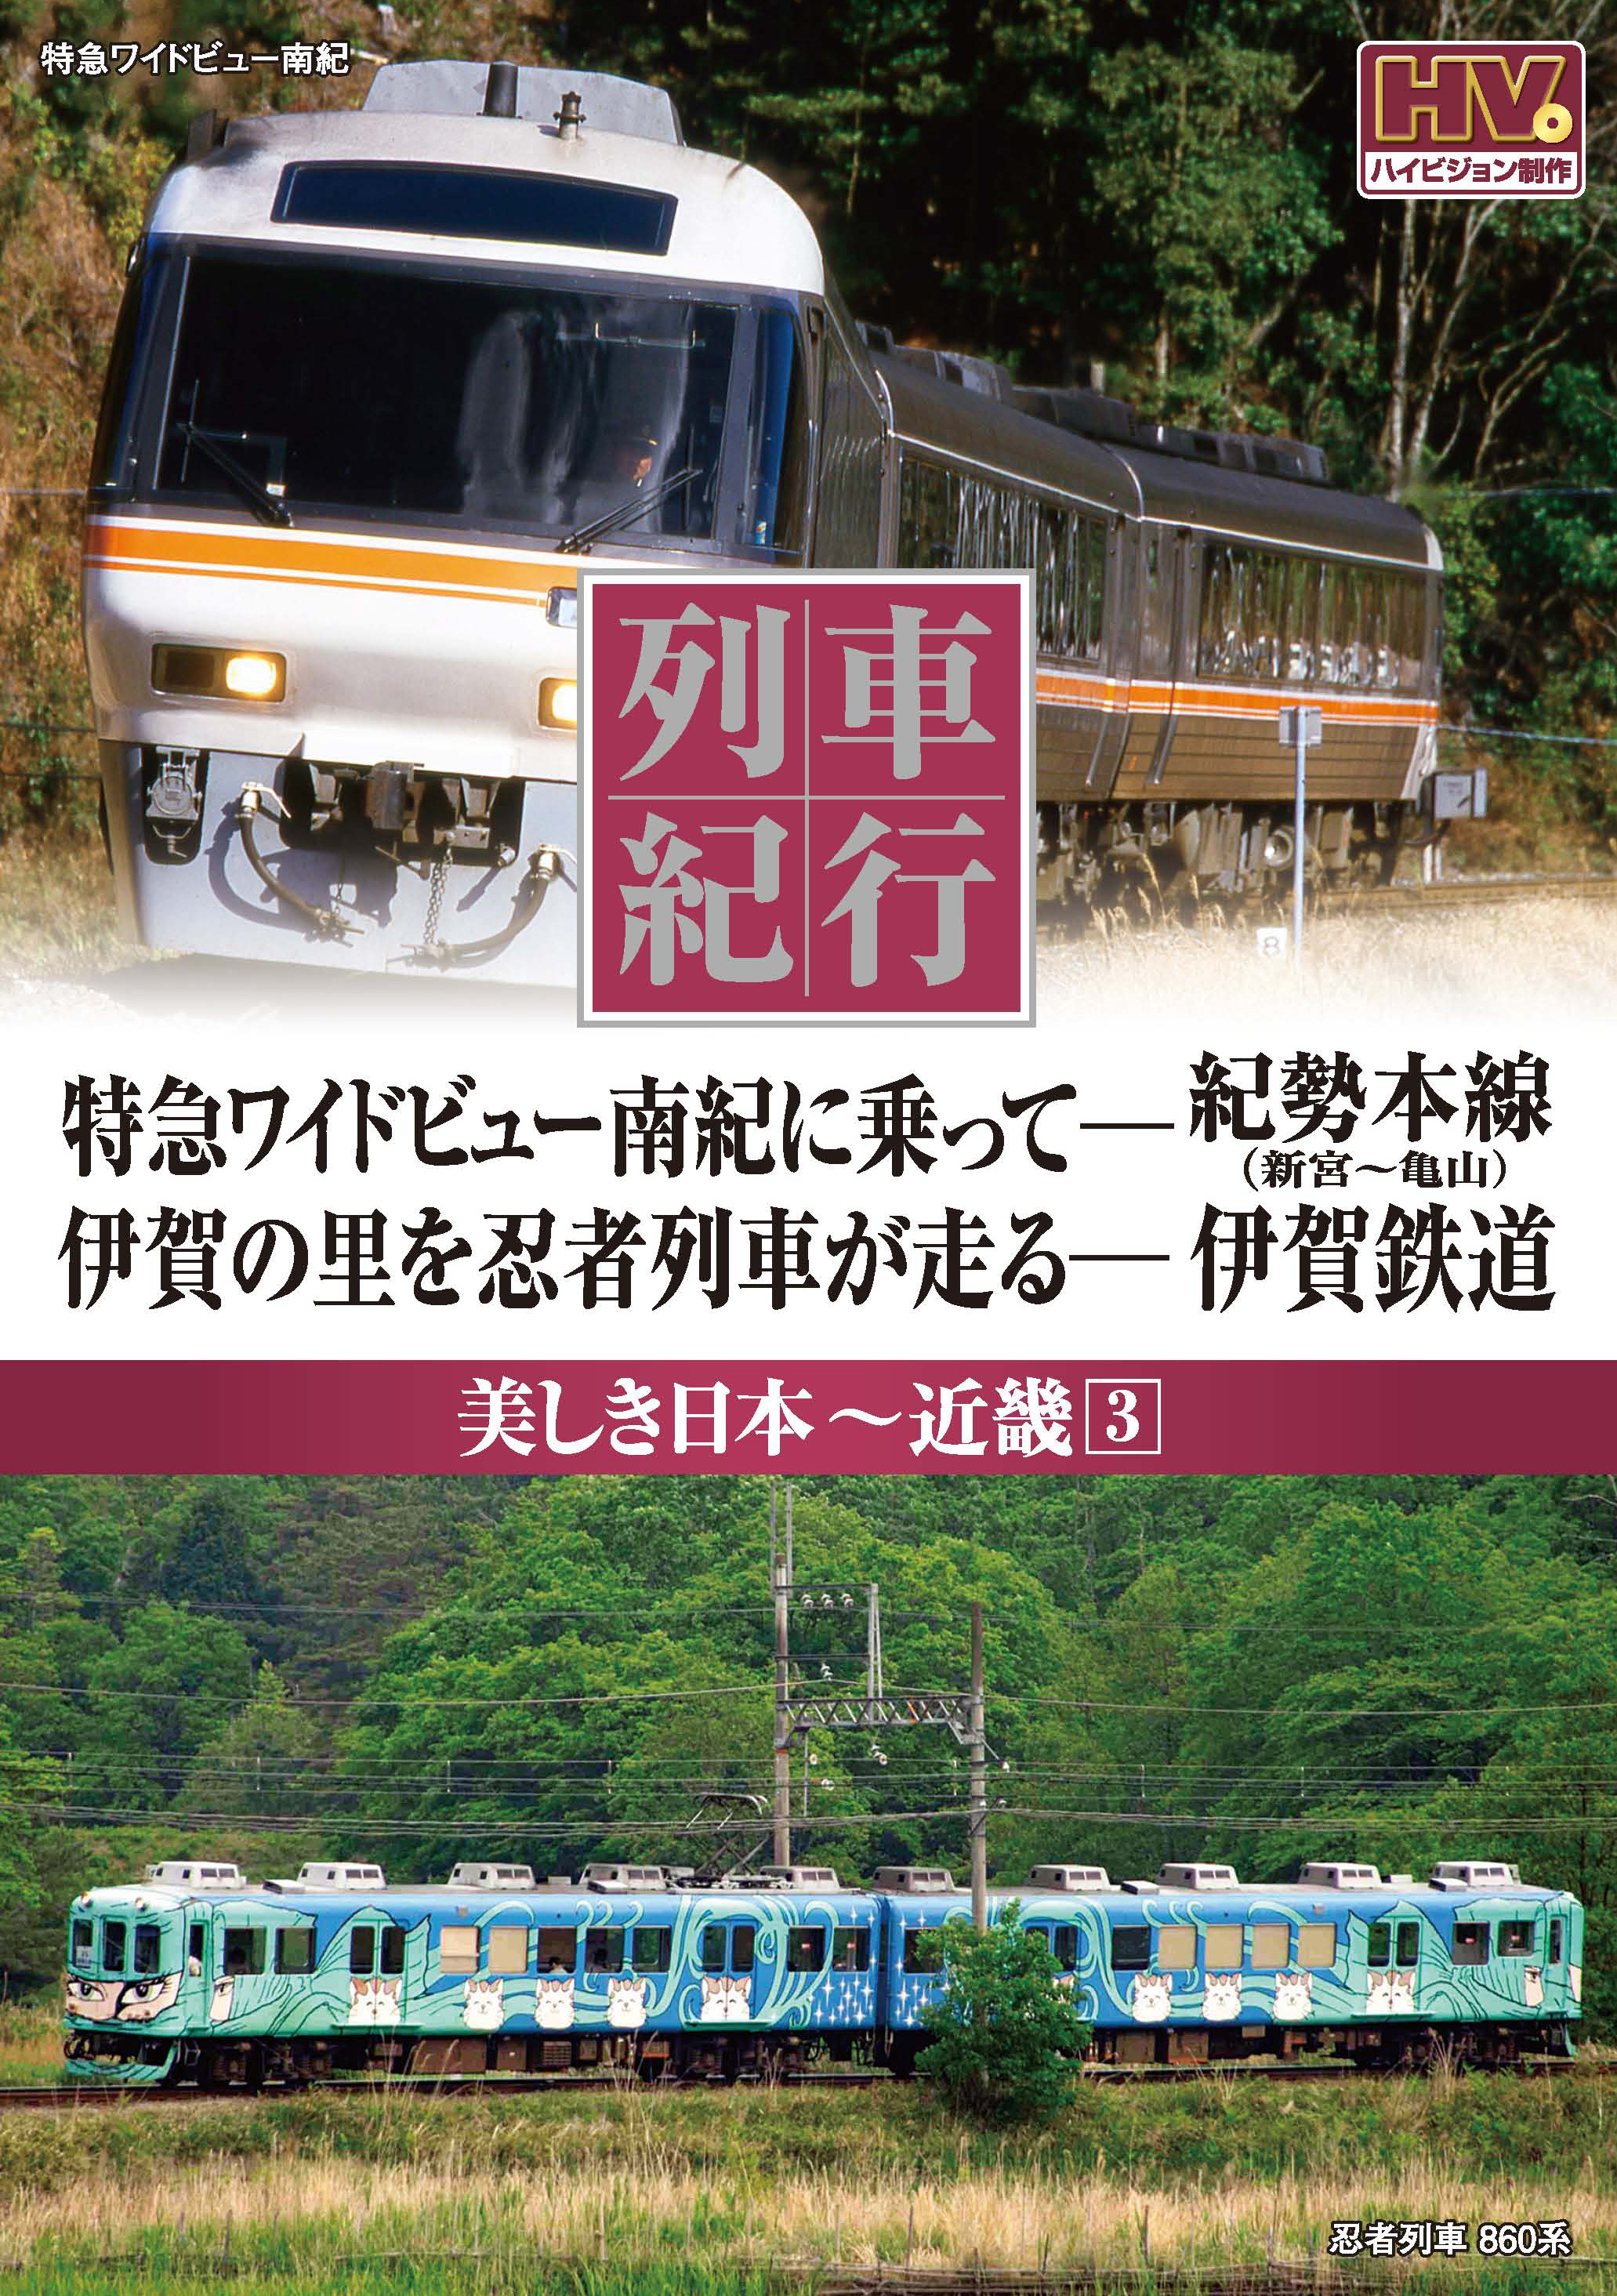 はありませ 列車紀行 美しき日本 15枚組 UTDws-m55455817130 までの 